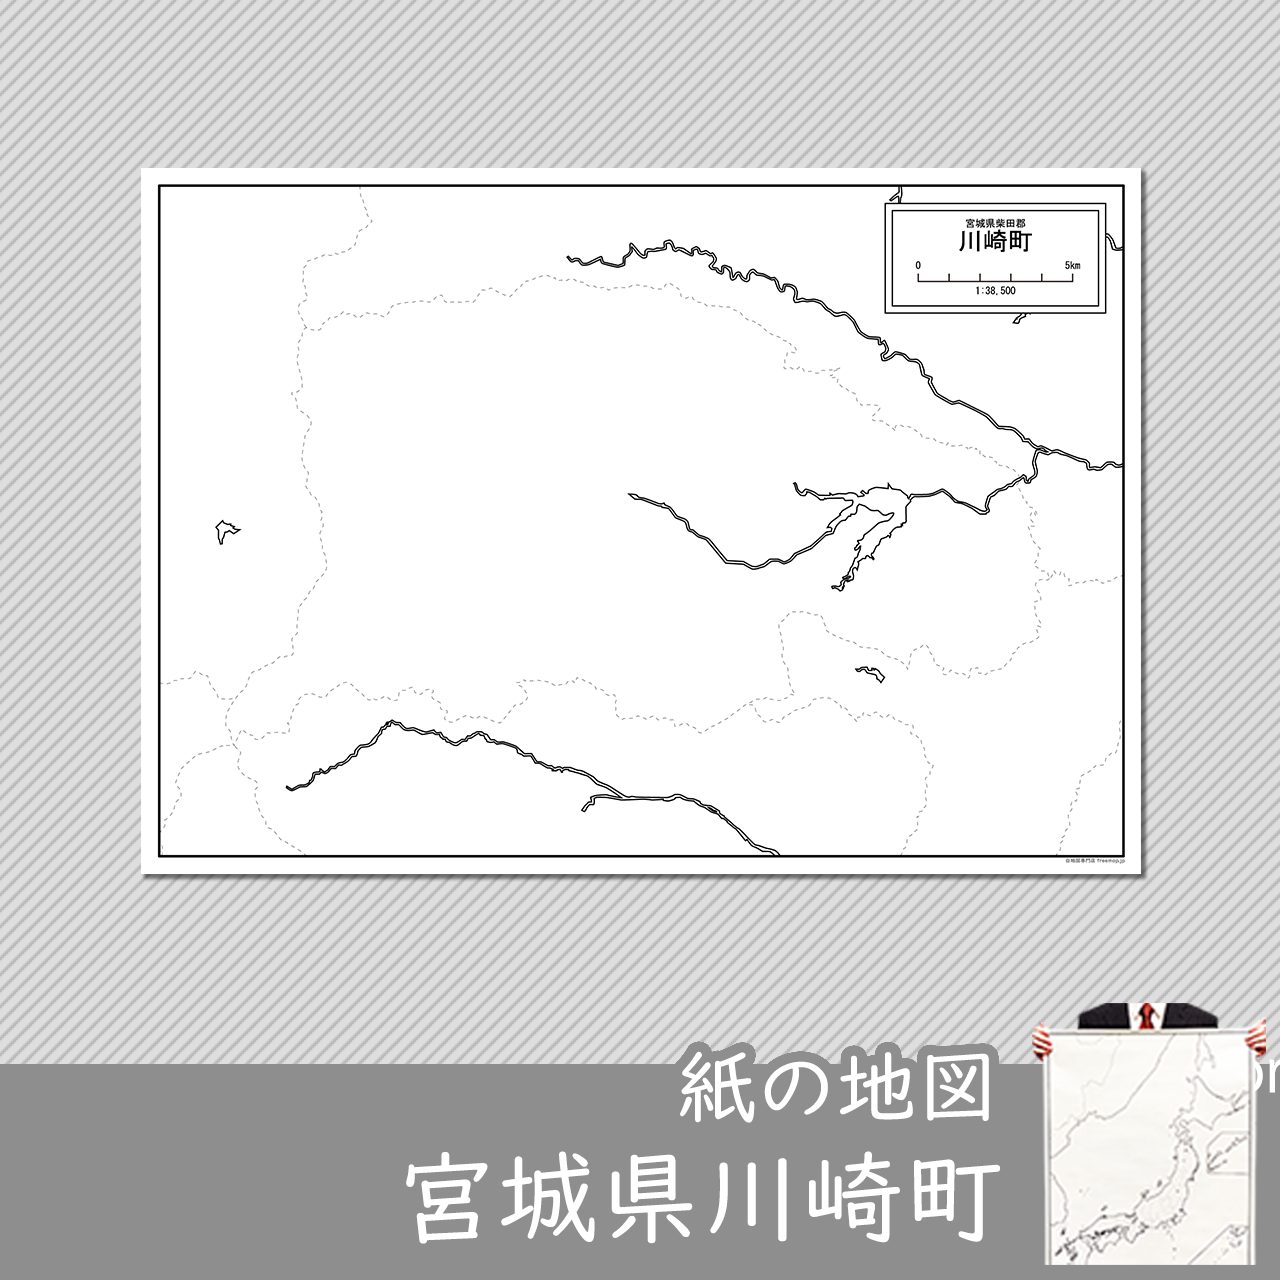 川崎町の紙の白地図のサムネイル